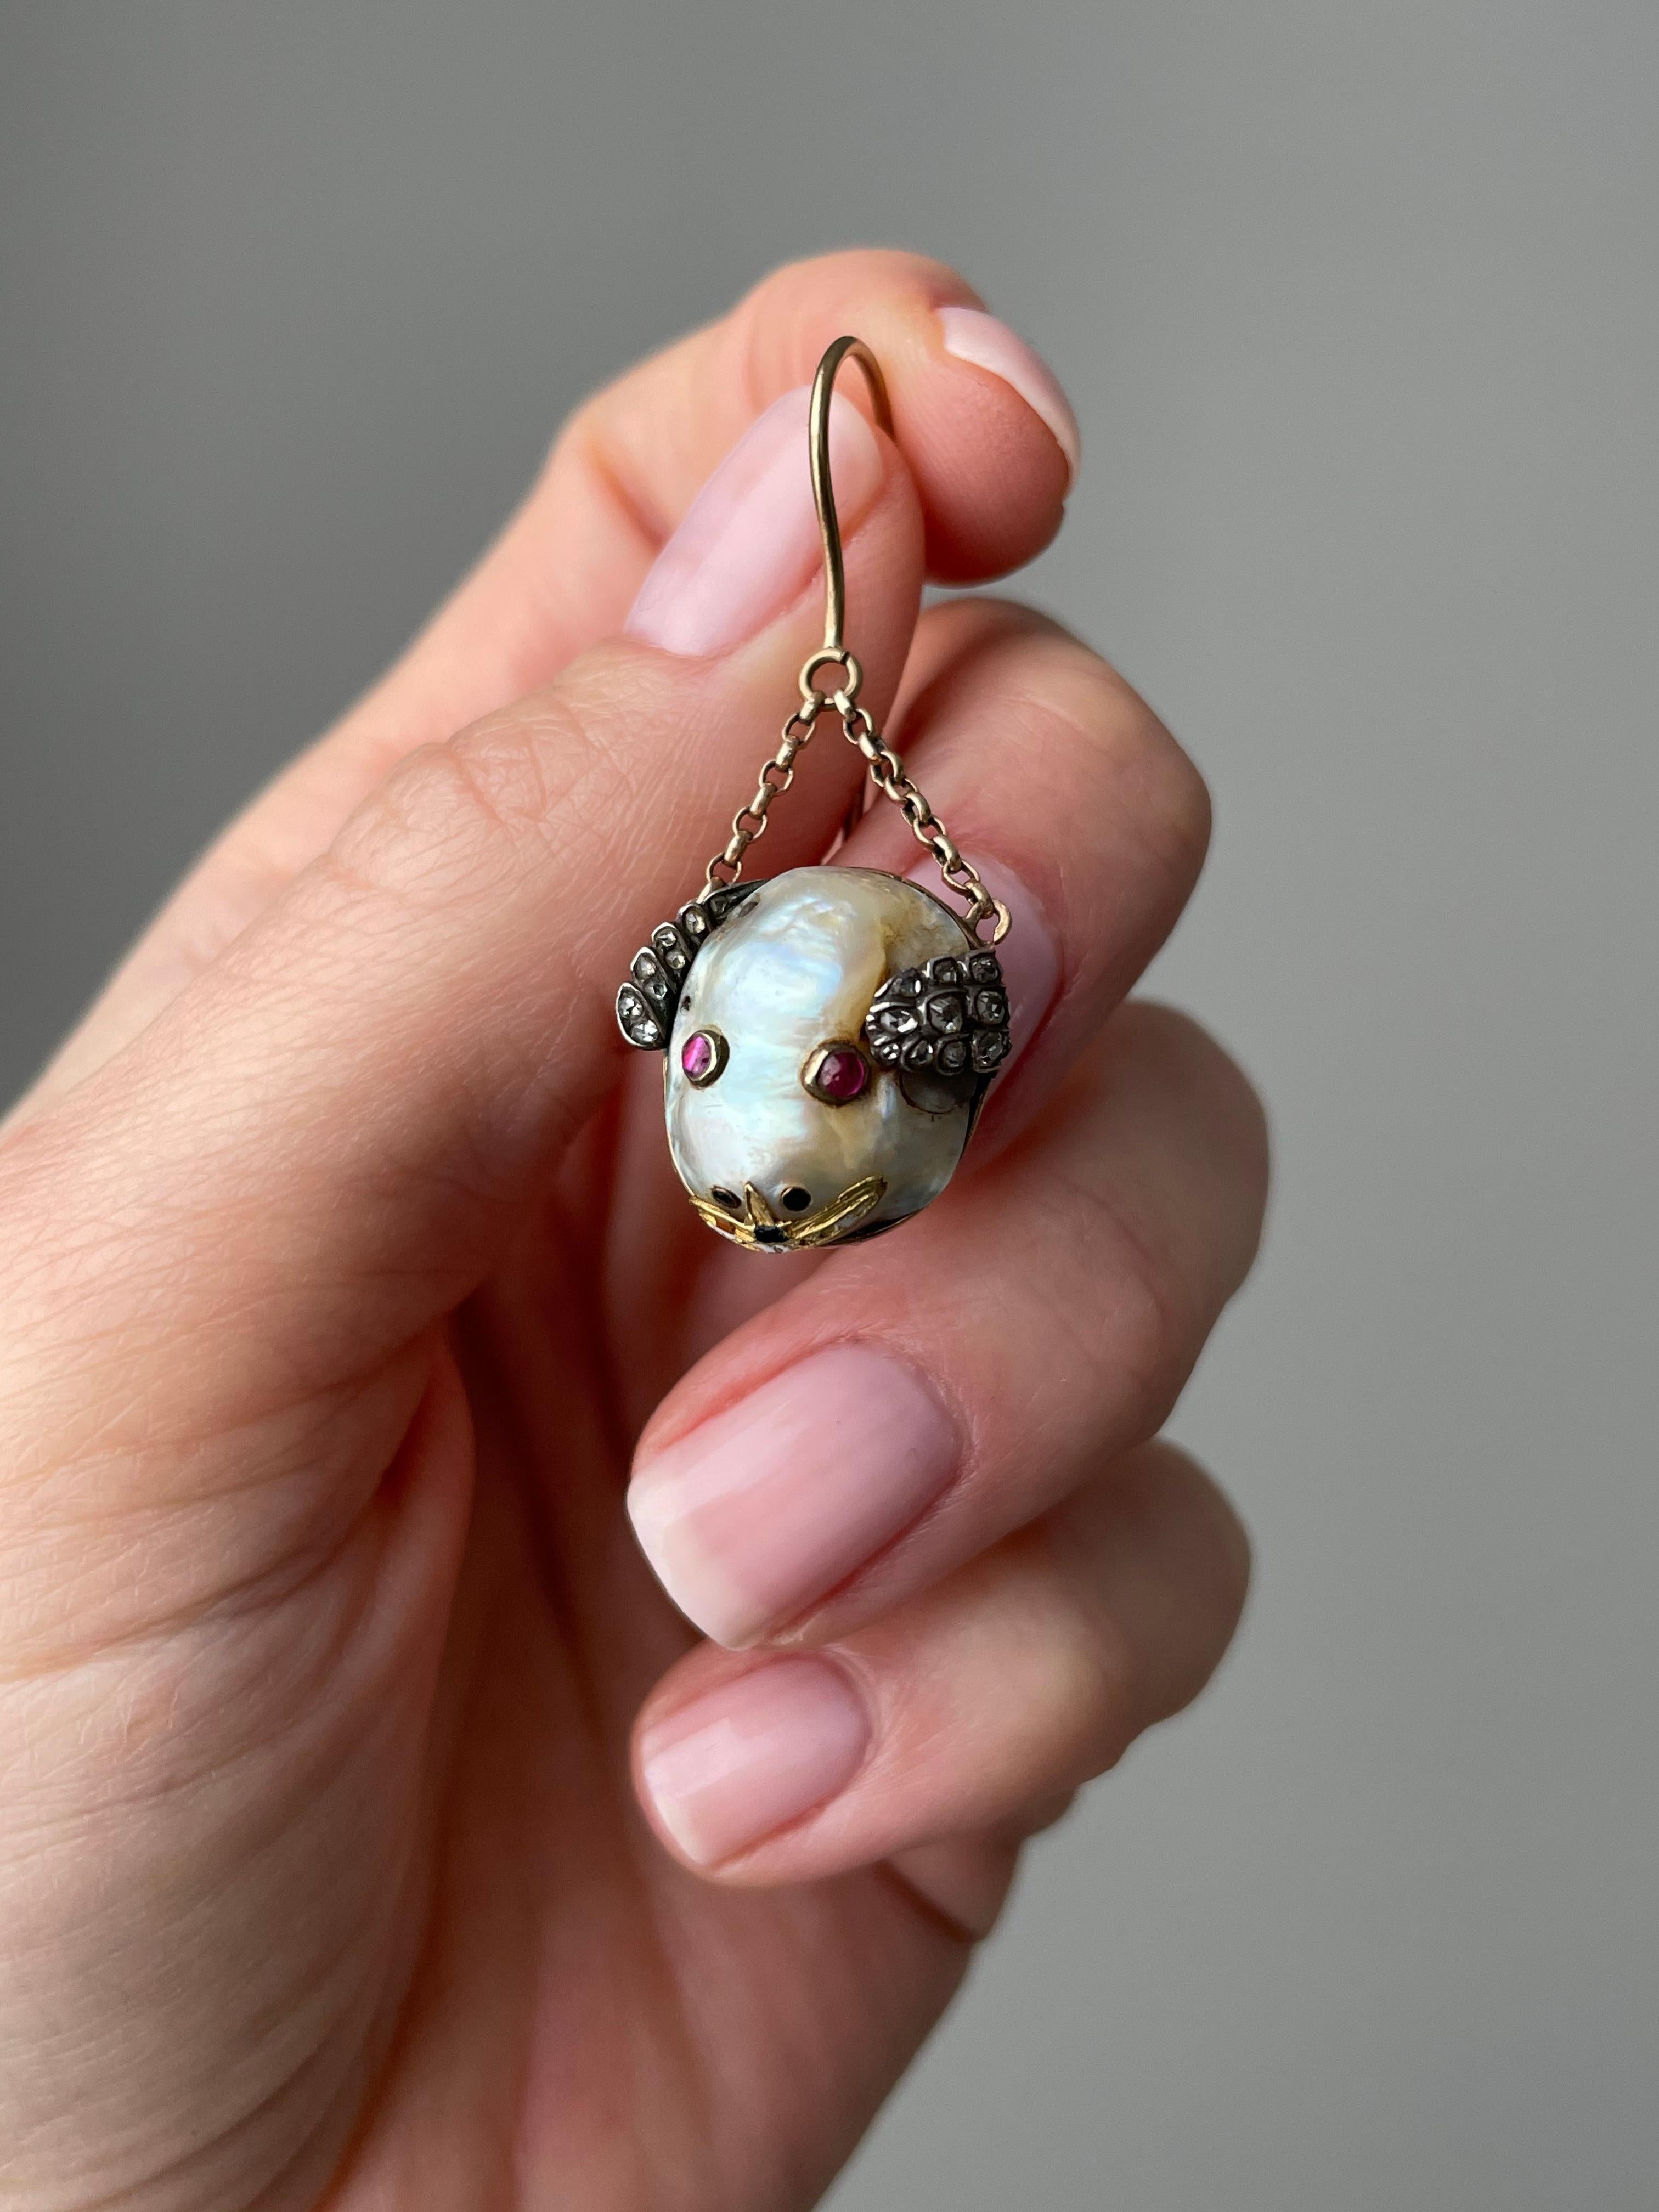 Une paire de souris fantaisistes en perles baroques avec des yeux en rubis, des oreilles en diamant et un sourire émaillé. Datant d'environ 1850, ces bestioles folles sont suspendues par deux courtes longueurs de chaîne délicate fabriquée à la main,